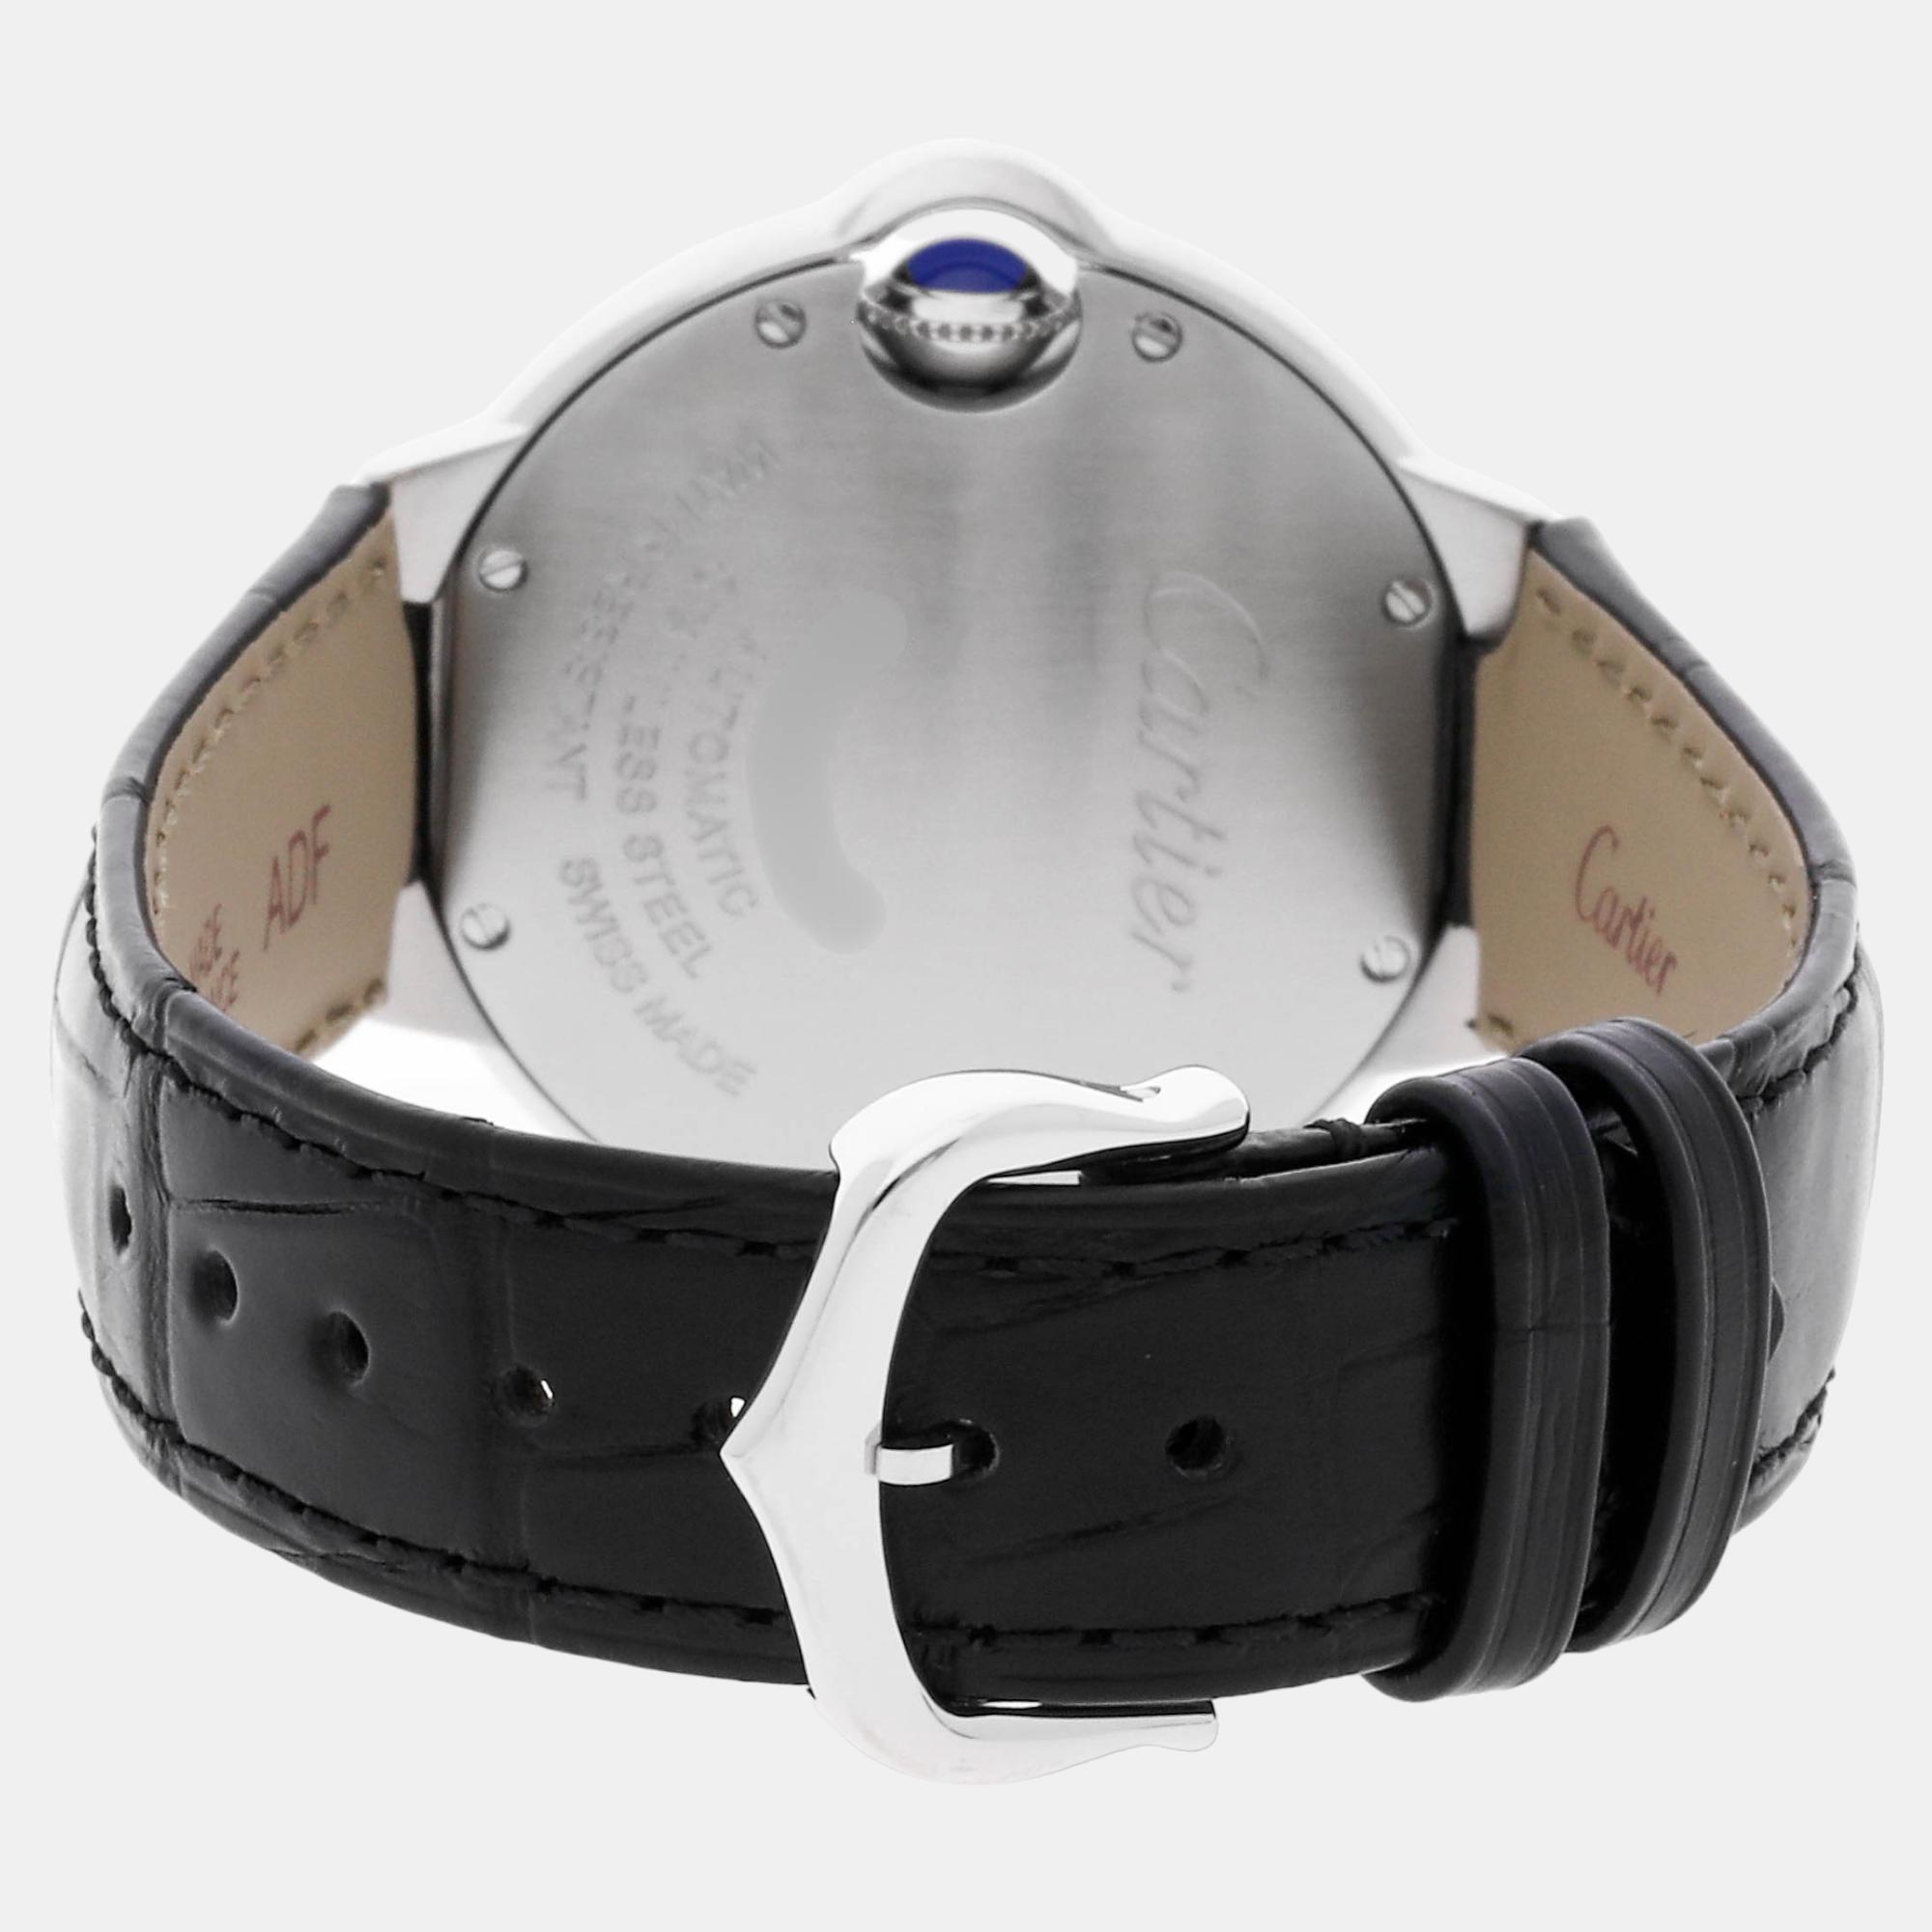 Cartier Silver Stainless Steel Ballon Bleu W6920085 Automatic Women's Wristwatch 33 Mm